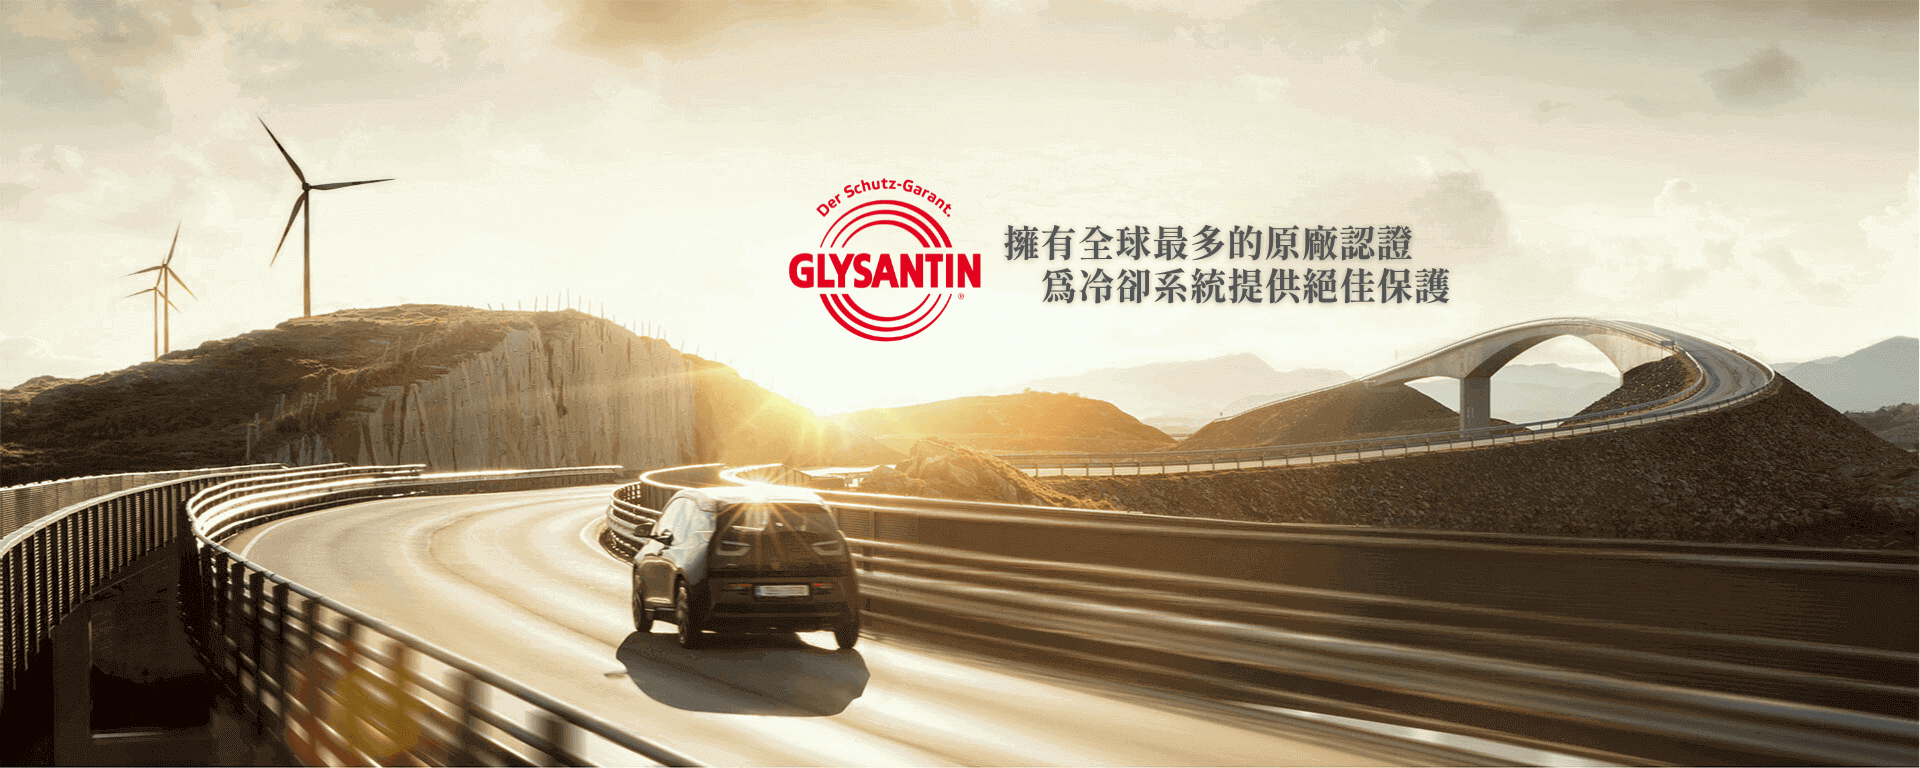 BASF GLYSANTIN Product Introductio